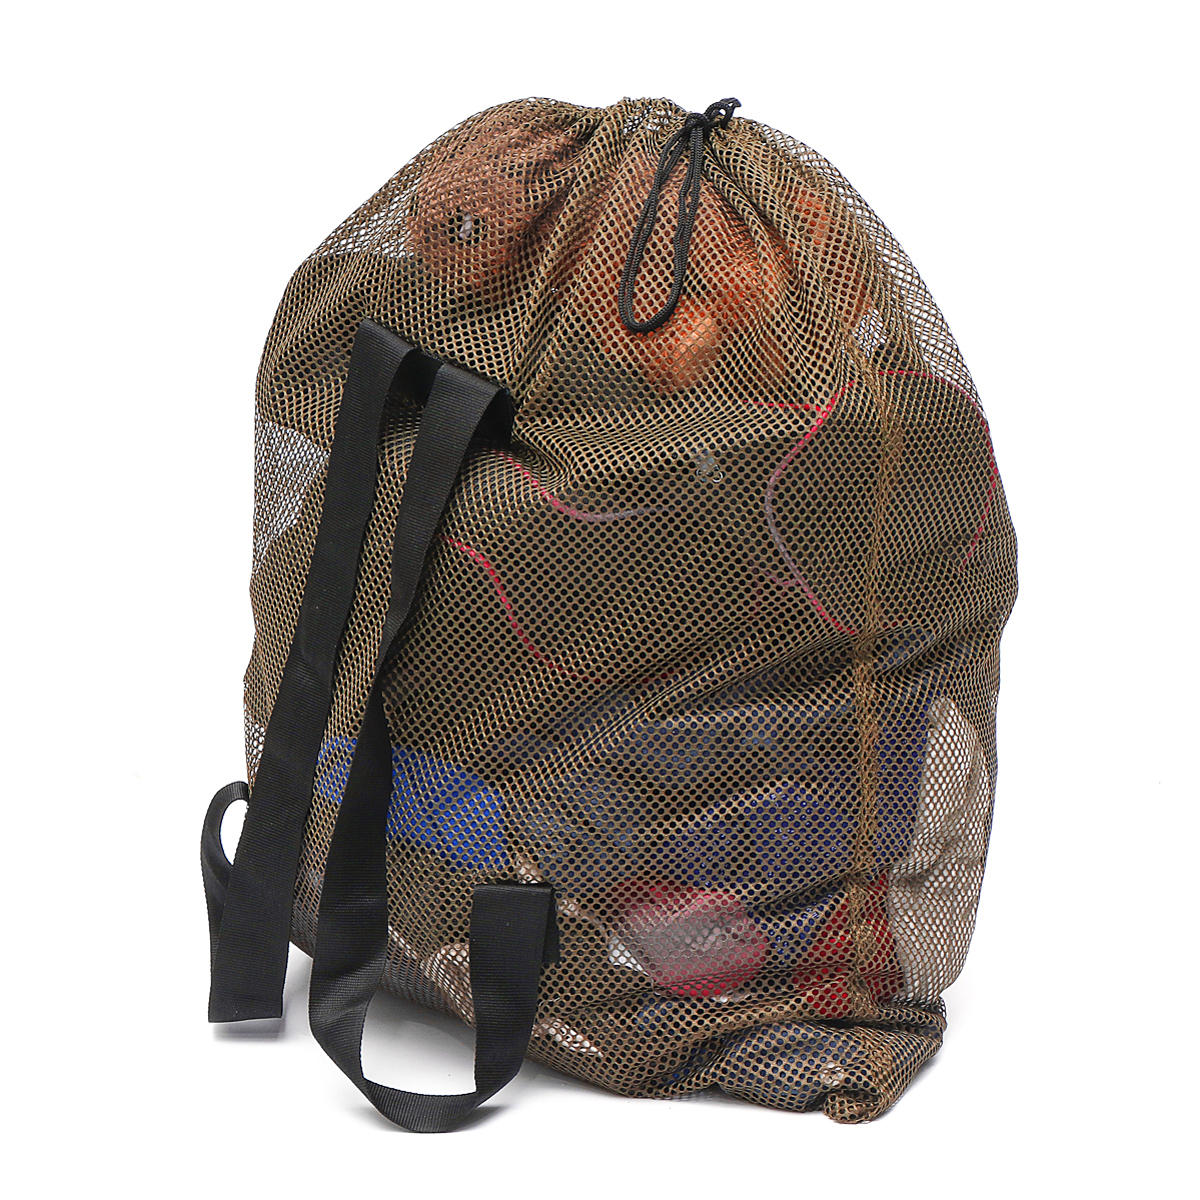 Tacktyczny plecak na ramię z siatki na zewnątrz do kempingu, polowania, przechowywania wabików na kaczki.